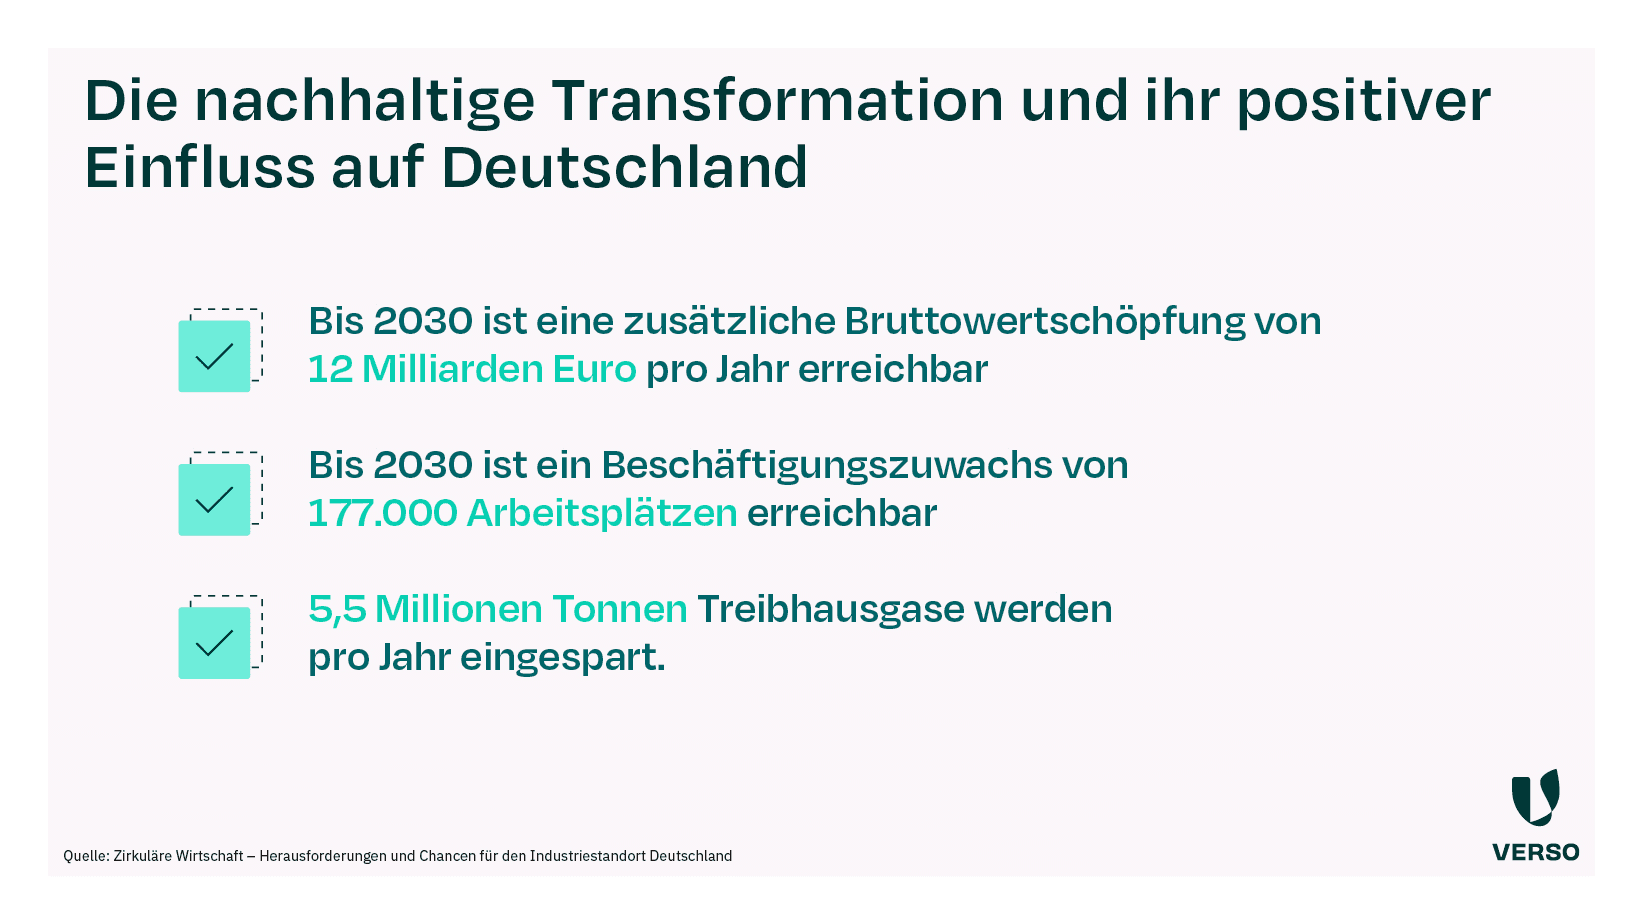 Die Nachhaltige Transformation im Sinne der Kreislaufwirtschaft birgt Vorteile für Deutschland als Wirtschaftsstandort. Bis 2030 ist eine zusätzliche Bruttowertschöpfung von 12 Milliarden Euro pro Jahr erreichbar. Bis 2030 ist ein Beschäftigungszuwachs von 177.000 Arbeitsplätzen erreichbar. 5,5 Millionen Tonnen Treibhausgase werden pro Jahr eingespart.